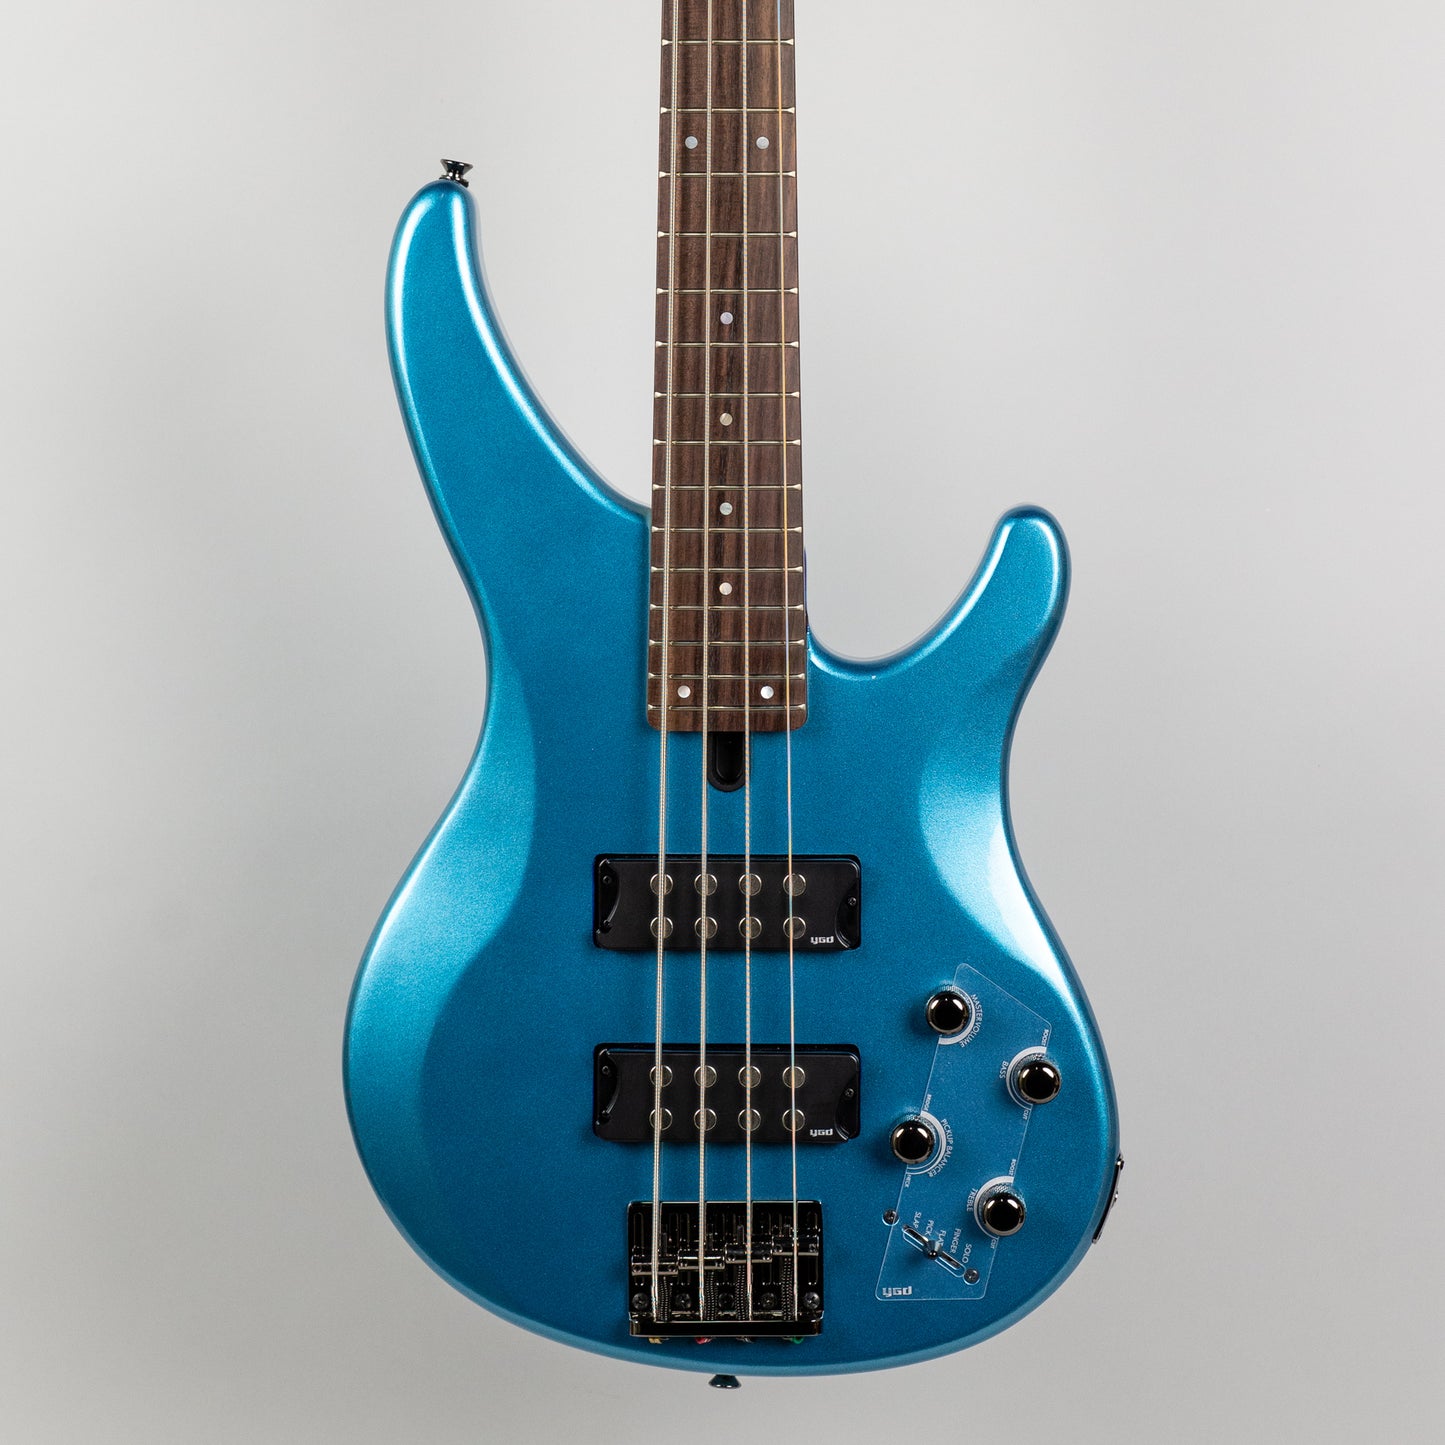 Yamaha TRBX304 4-String Bass Guitar in Factory Blue